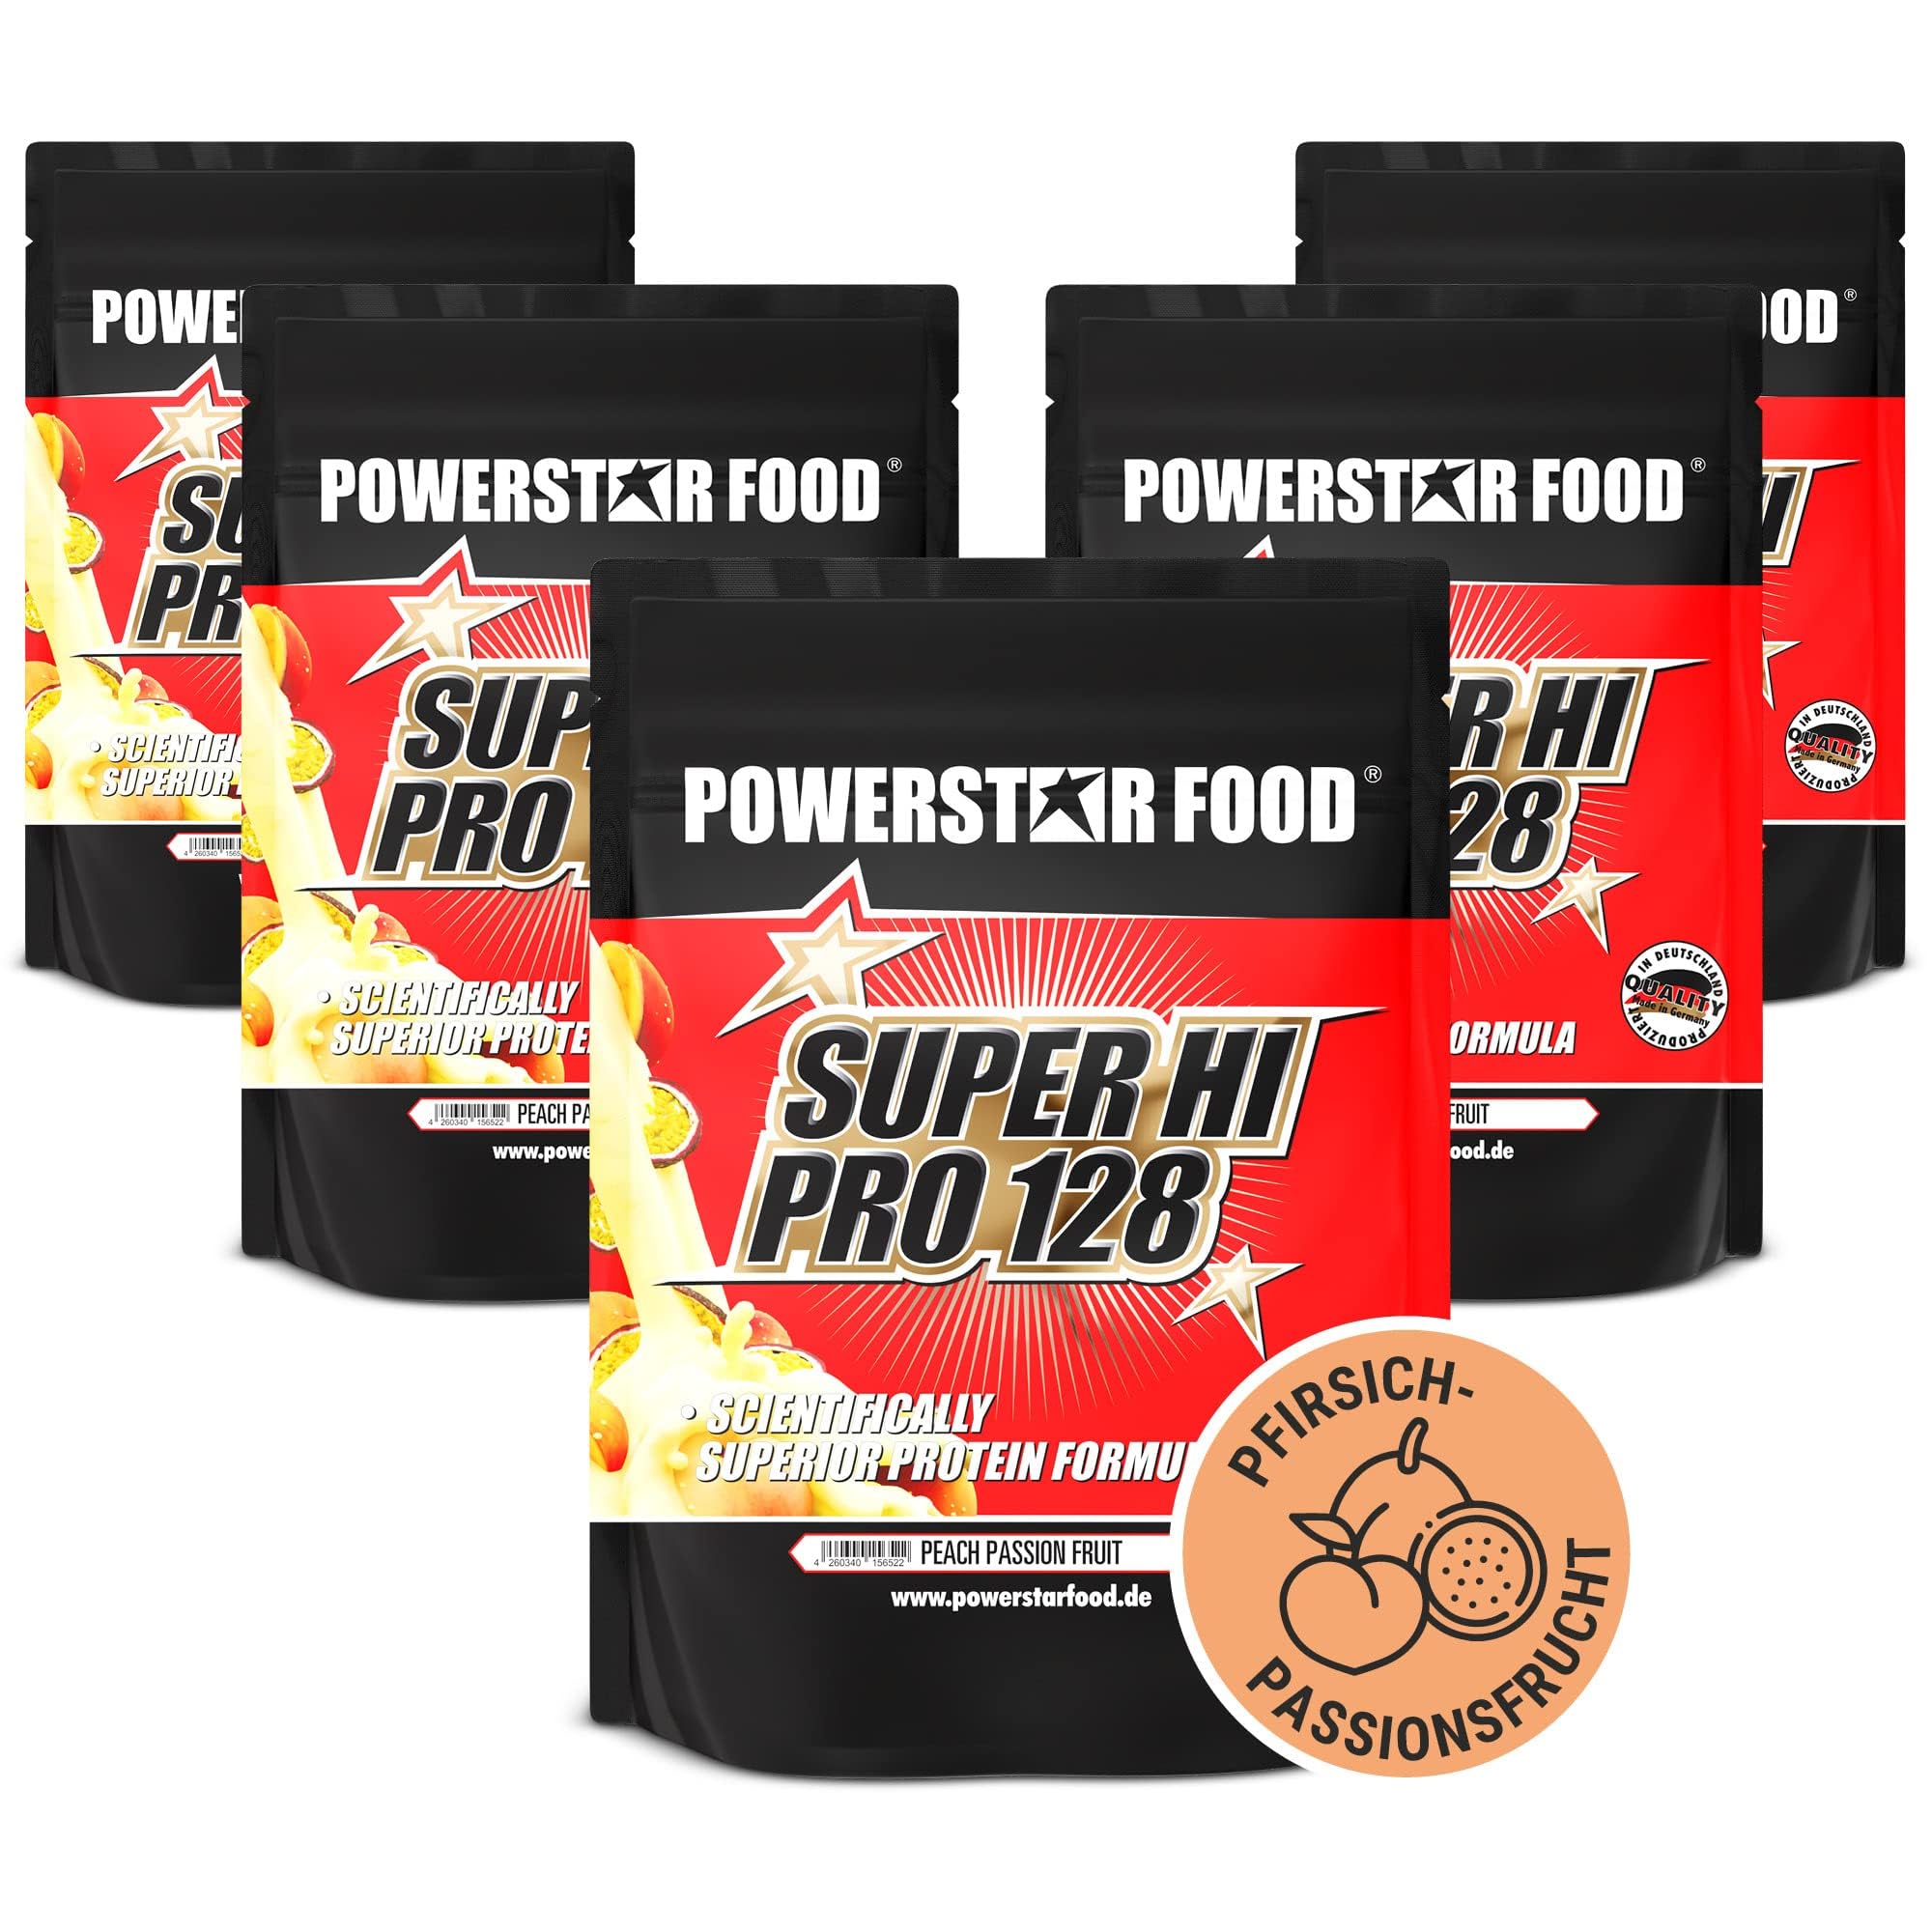 Powerstar SUPER HI PRO 128 | Mehrkomponenten Protein-Pulver Peach-Passion-Fruit 5x1000g | Höchstmögliche Biologische Wertigkeit | Eiweiß-Pulver mit 80% Protein i.Tr. | Zum Muskelaufbau & Abnehmen